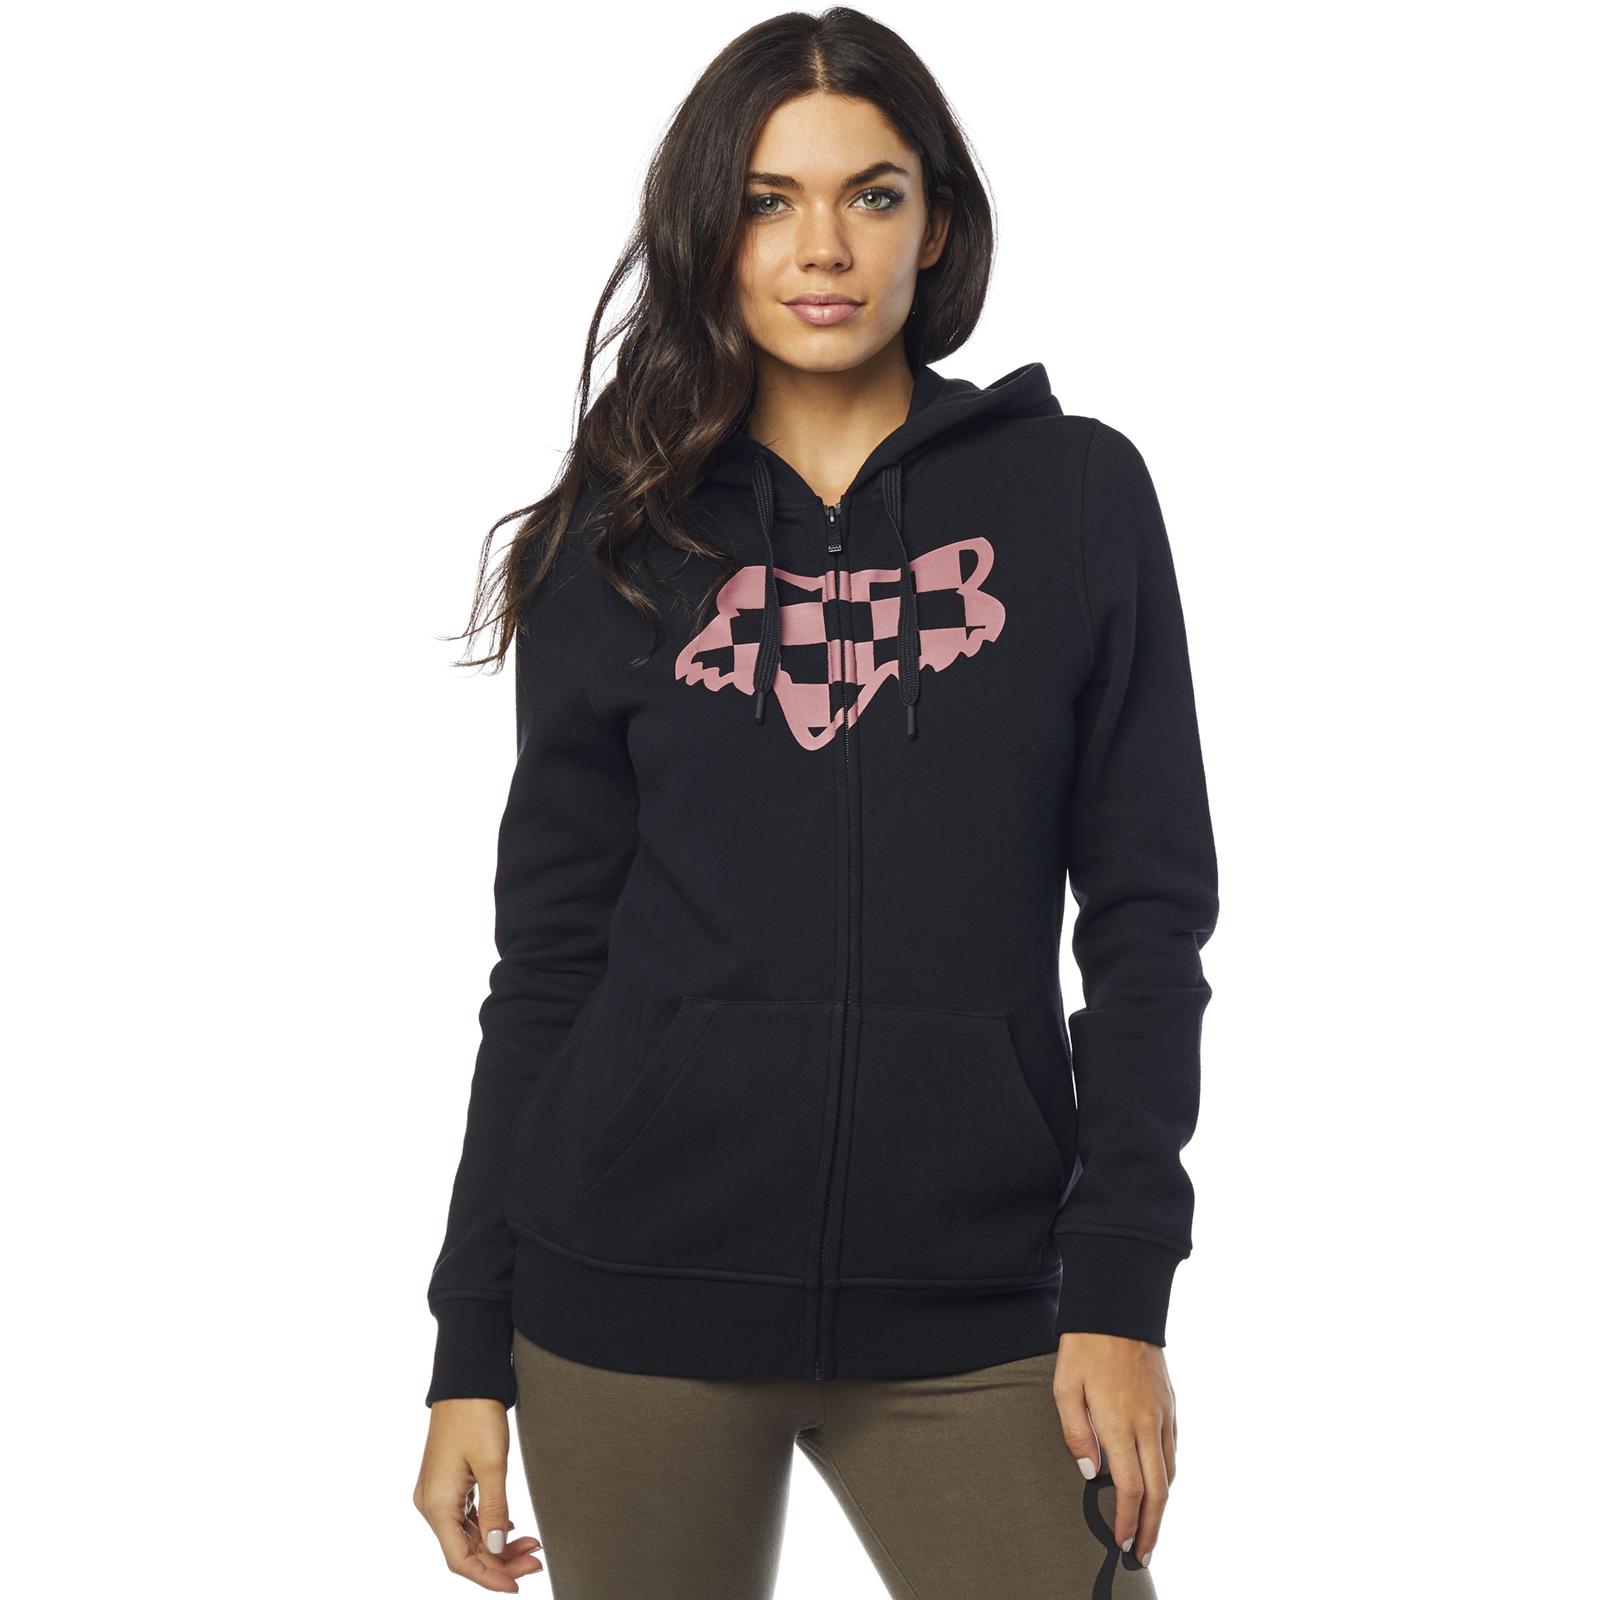 womens fox racing zip up hoodies